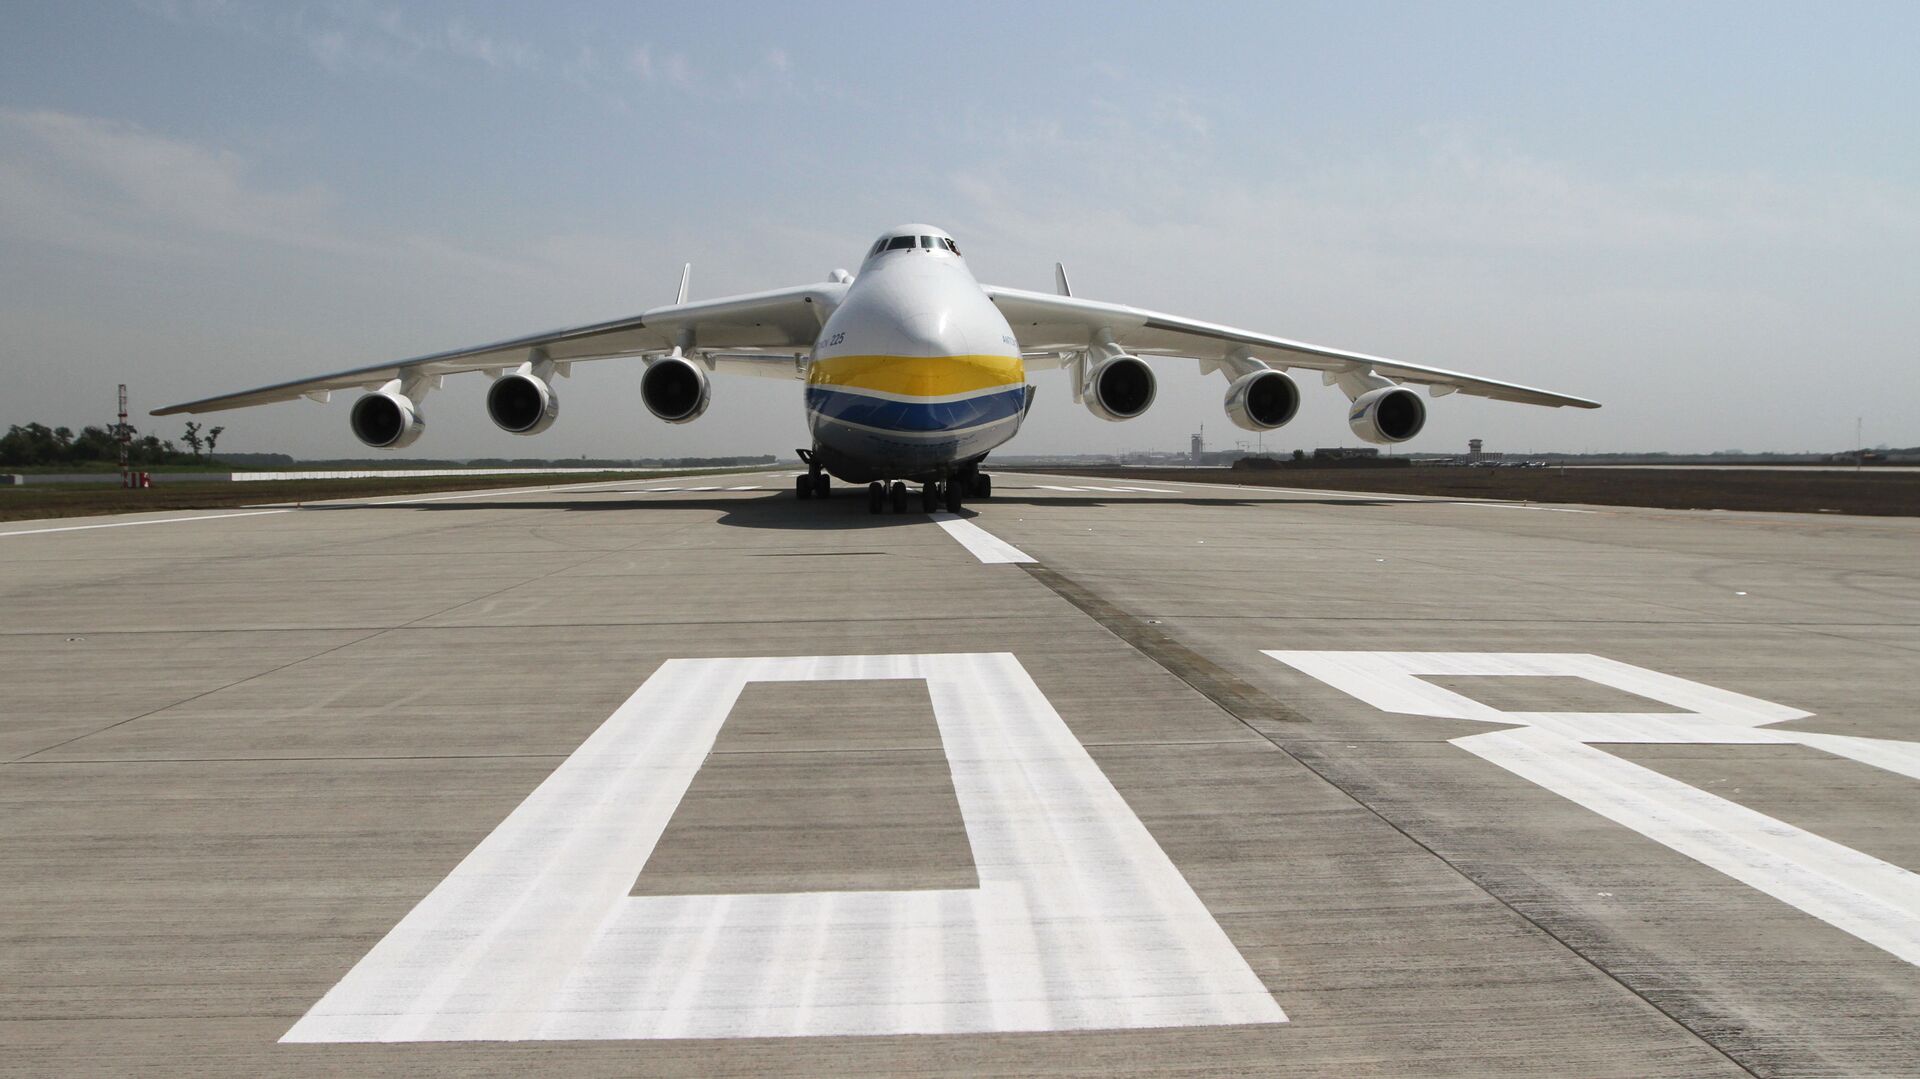 Máy bay An-225 Mriya trên đường băng mới sân bay quốc tế Donetsk. - Sputnik Việt Nam, 1920, 14.03.2021